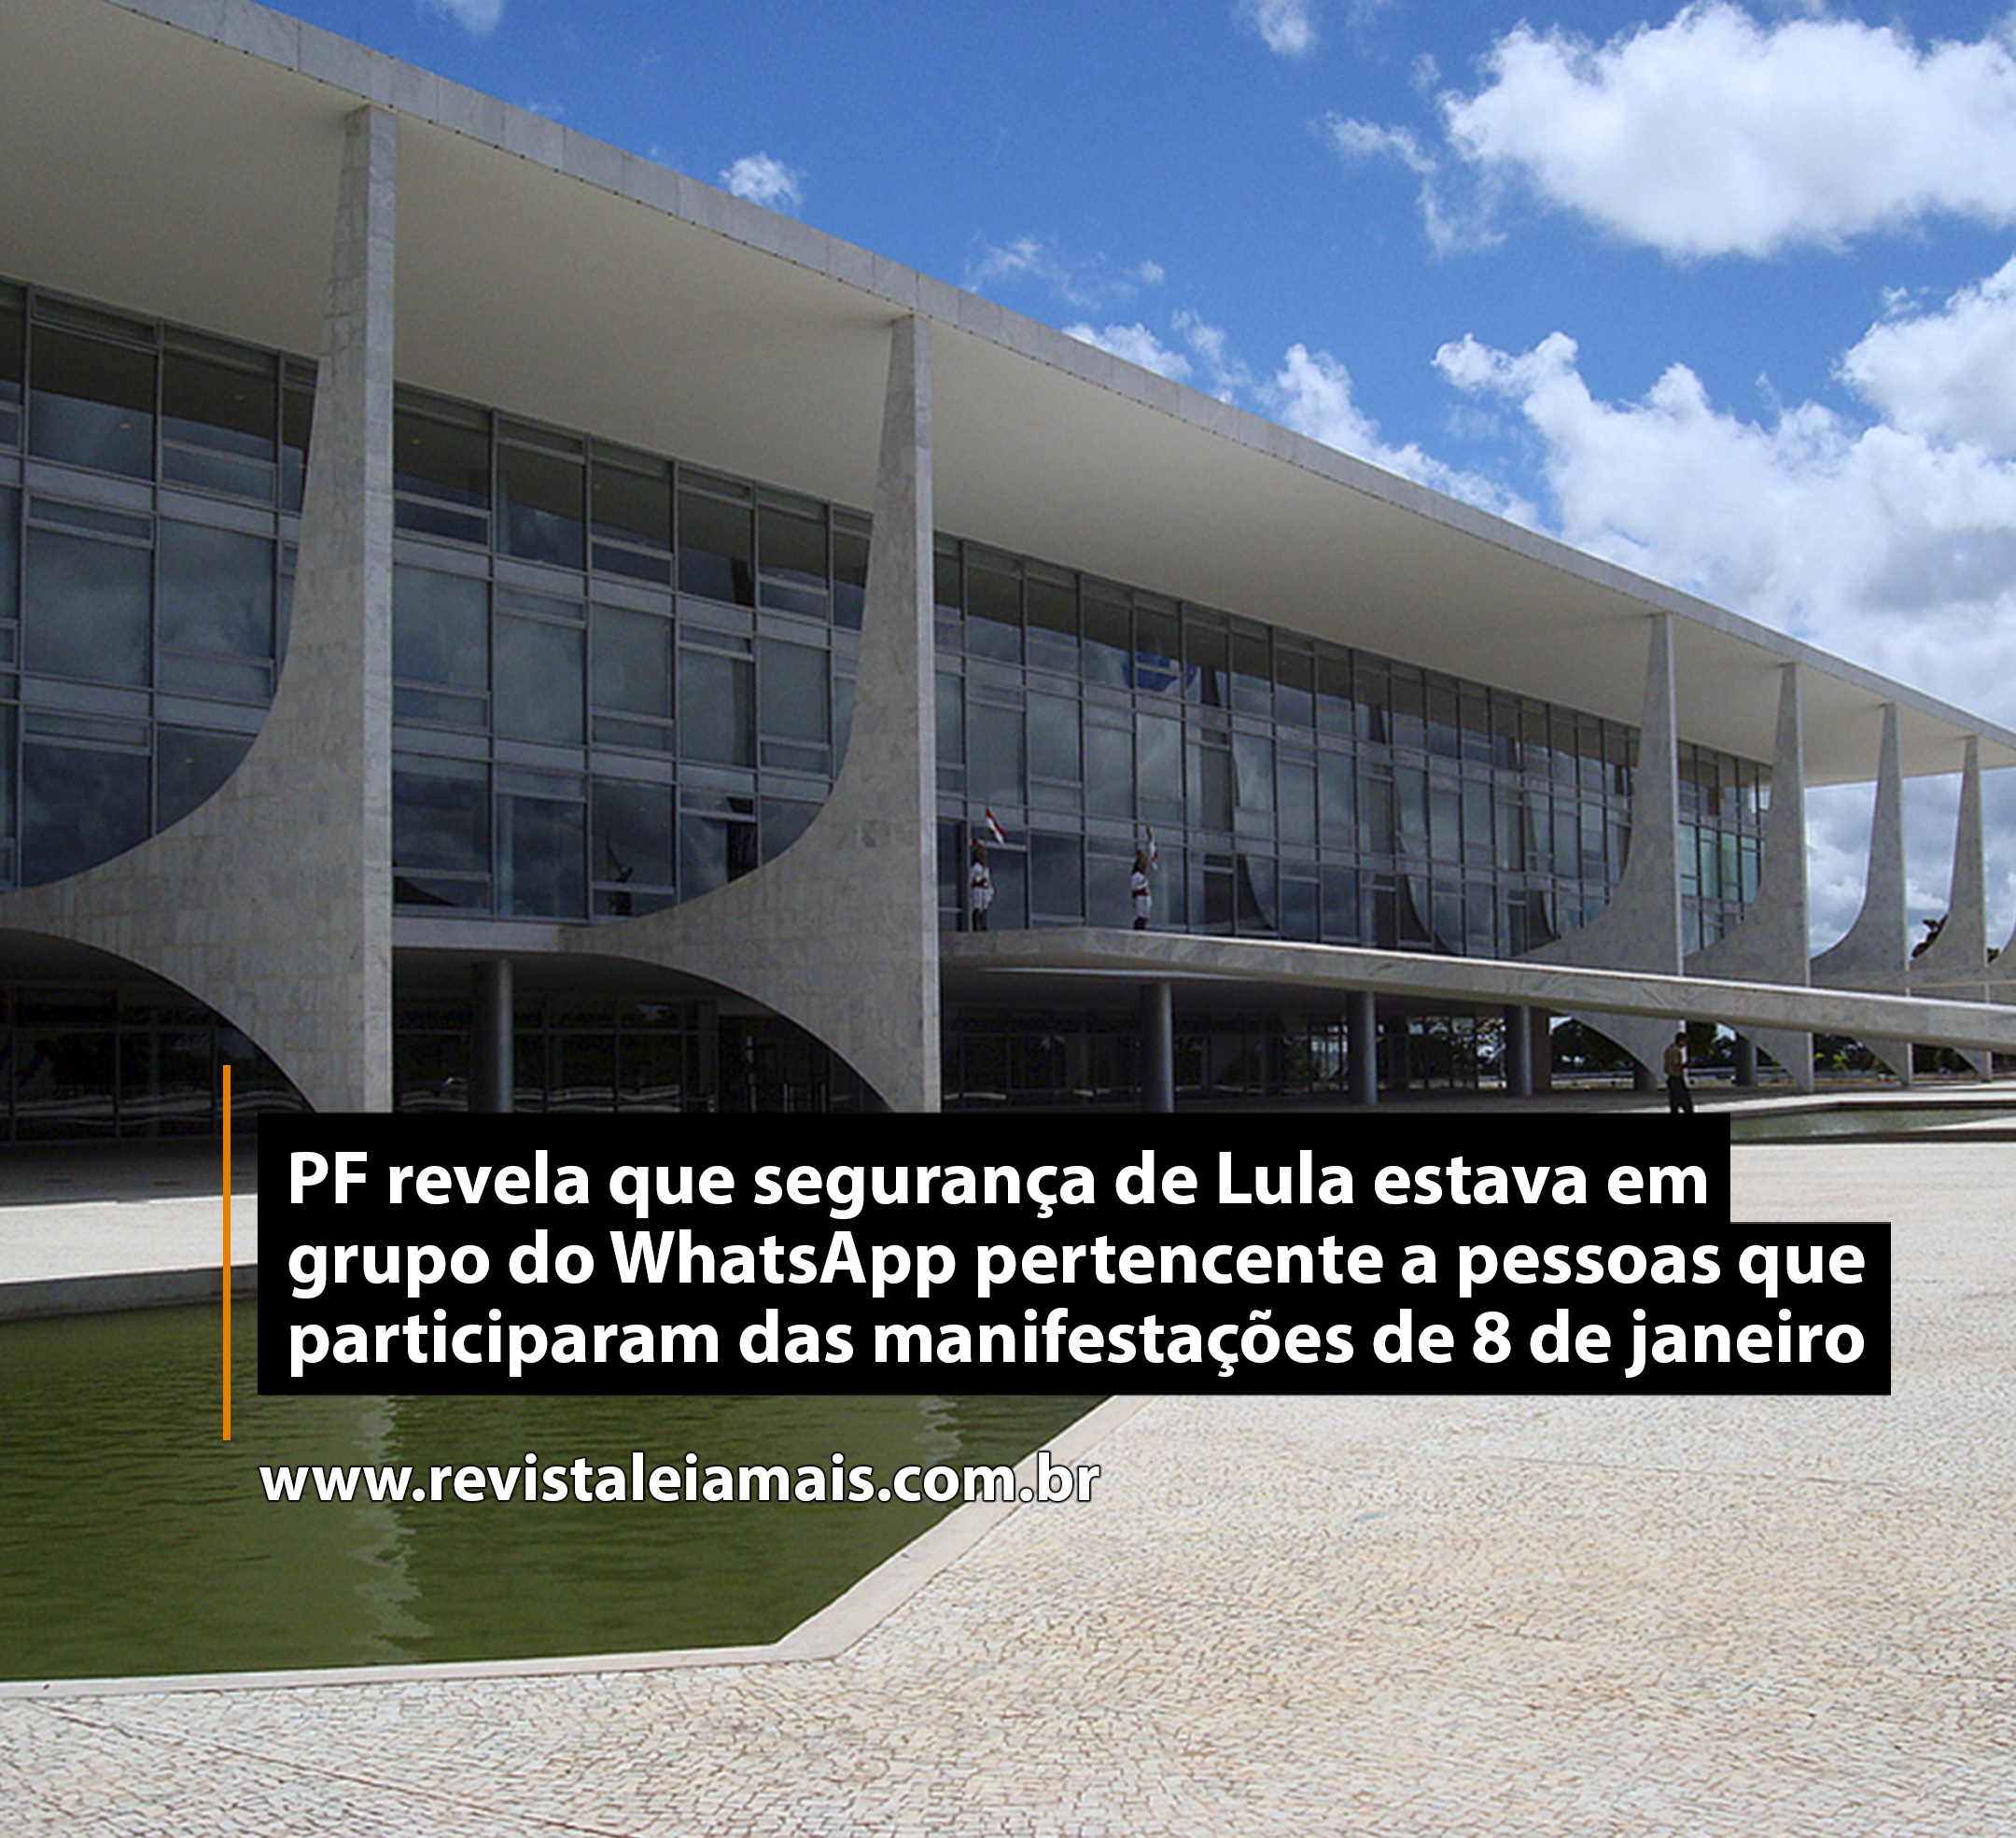 PF revela que segurança de Lula estava em grupo do WhatsApp pertencente a pessoas que participaram das manifestações de 8 de janeiro